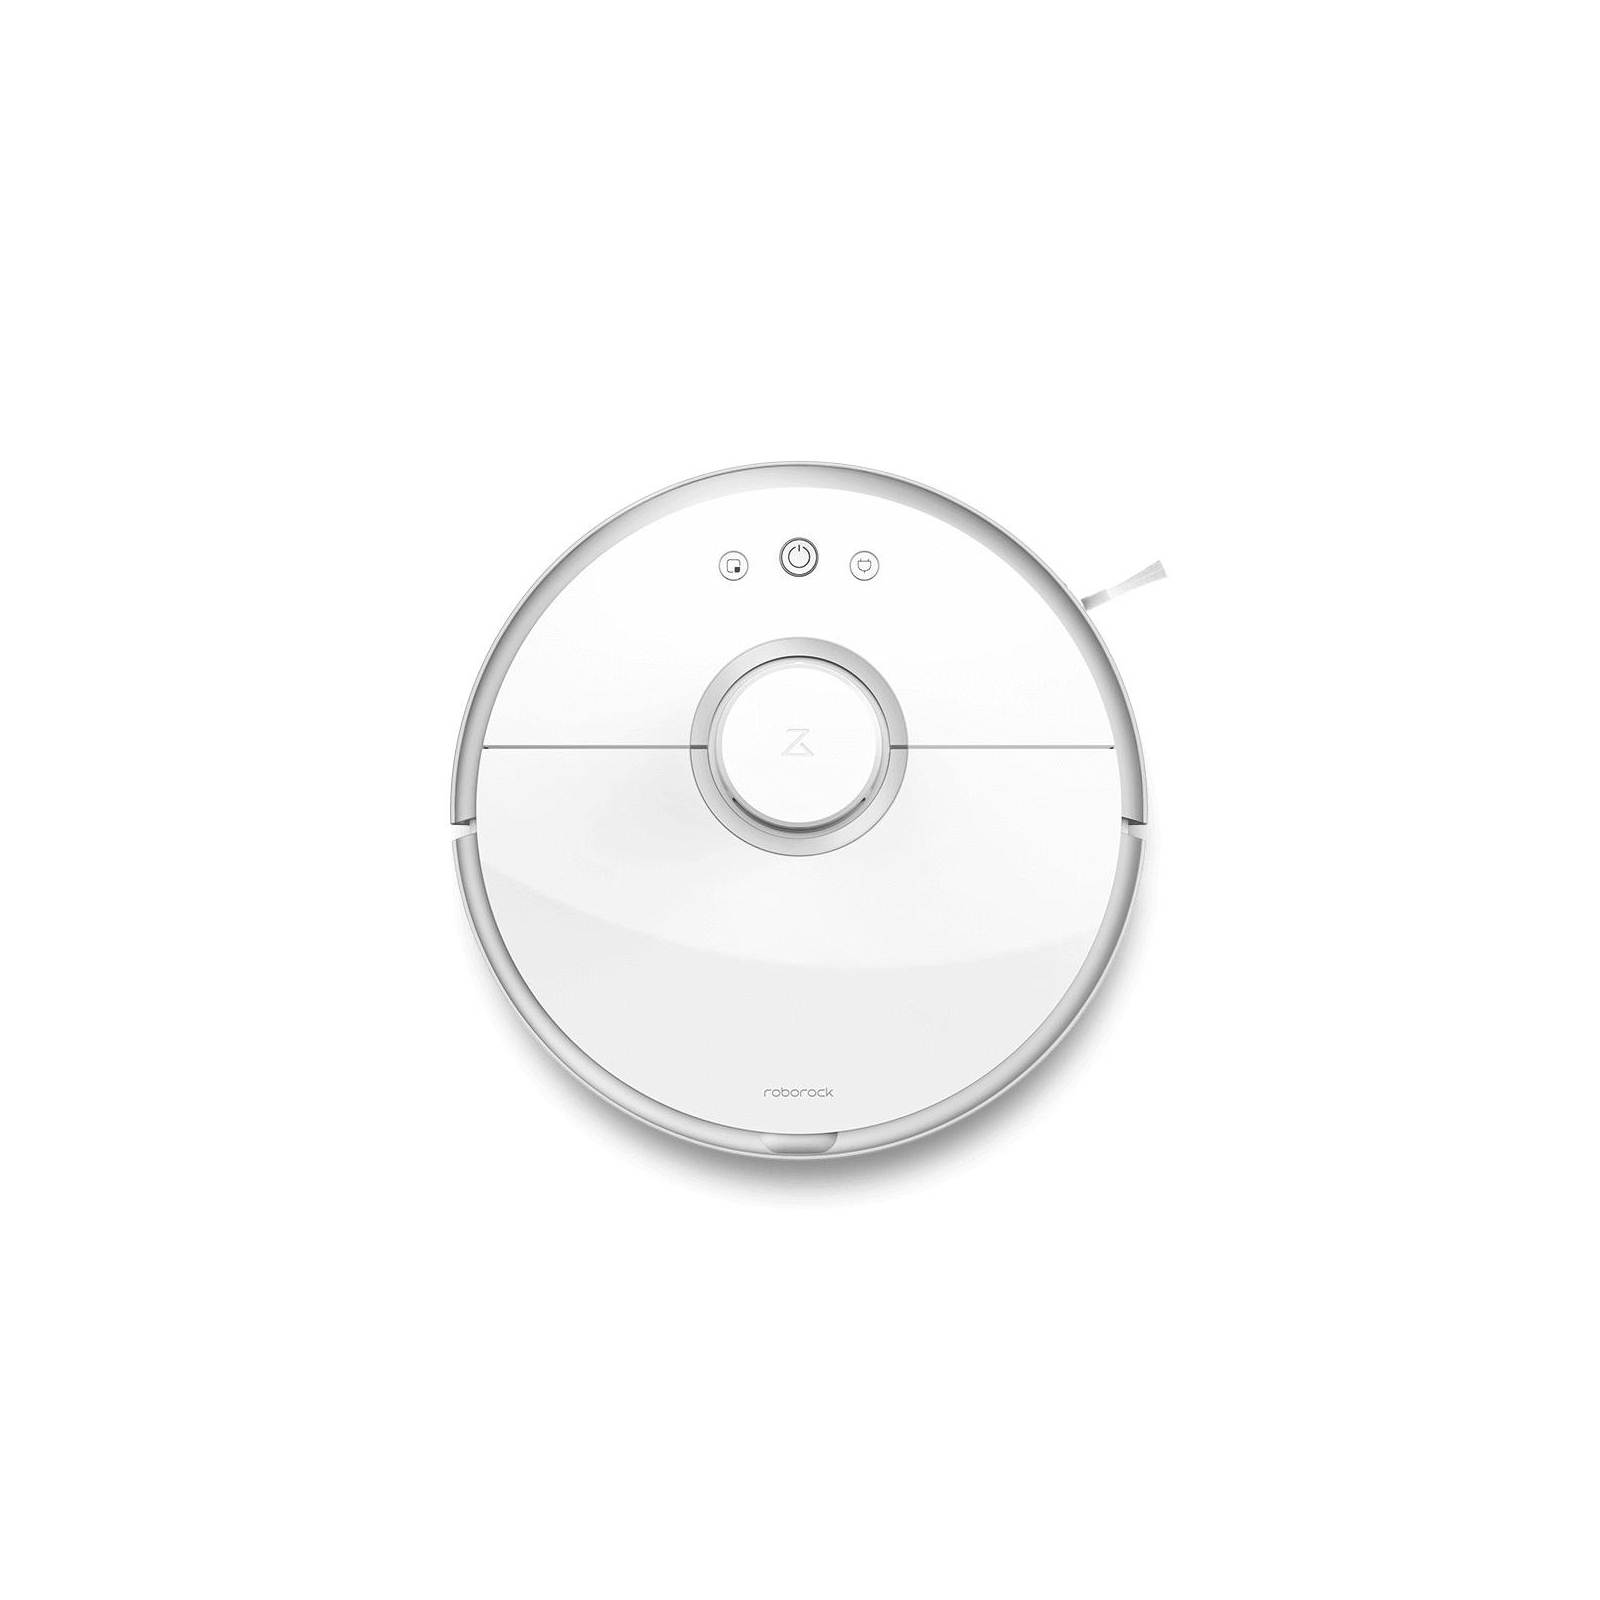 Пылесос Xiaomi Roborock Vacuum Cleaner 2 White (S502-00) изображение 2